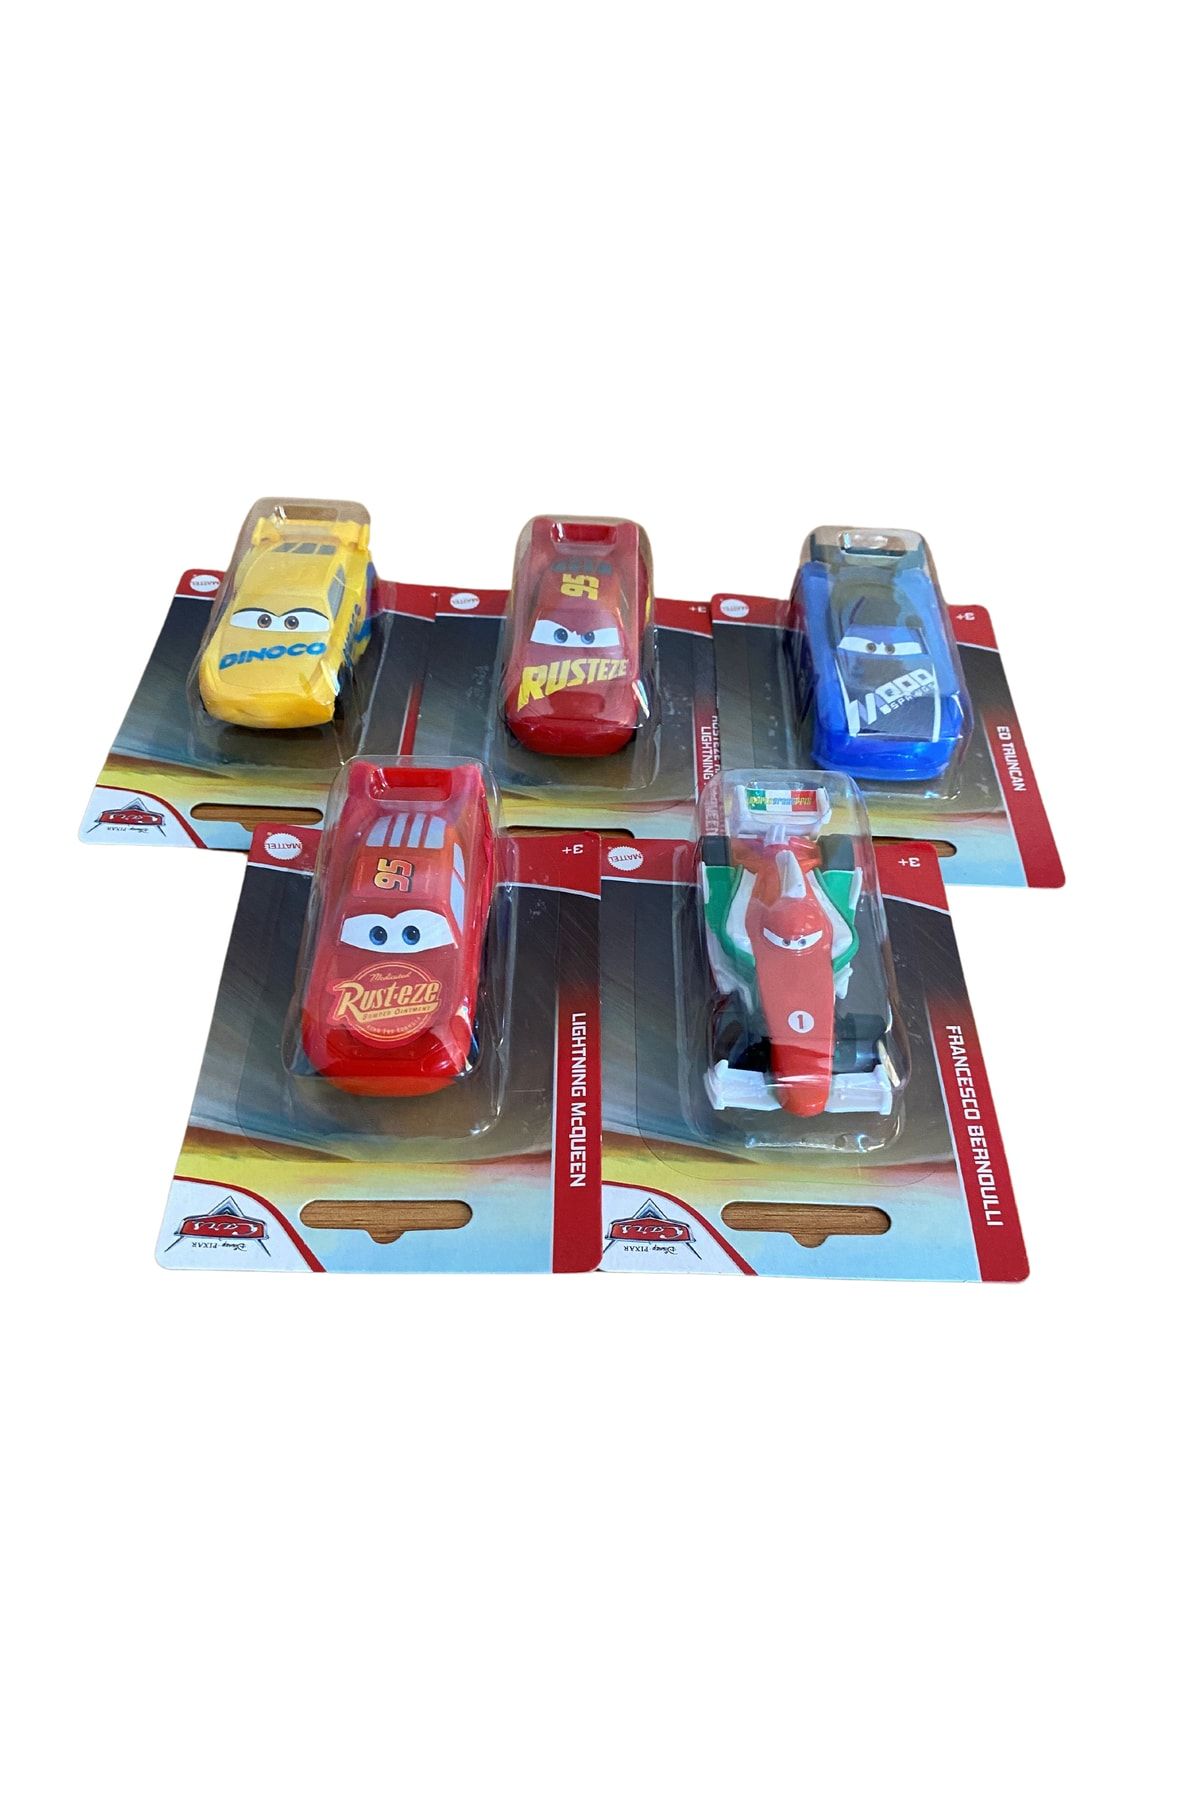 DİSNEY Şimşek Mcqueen Disney Lisanslı Mattel Oyuncak Arabalar 5'li Set